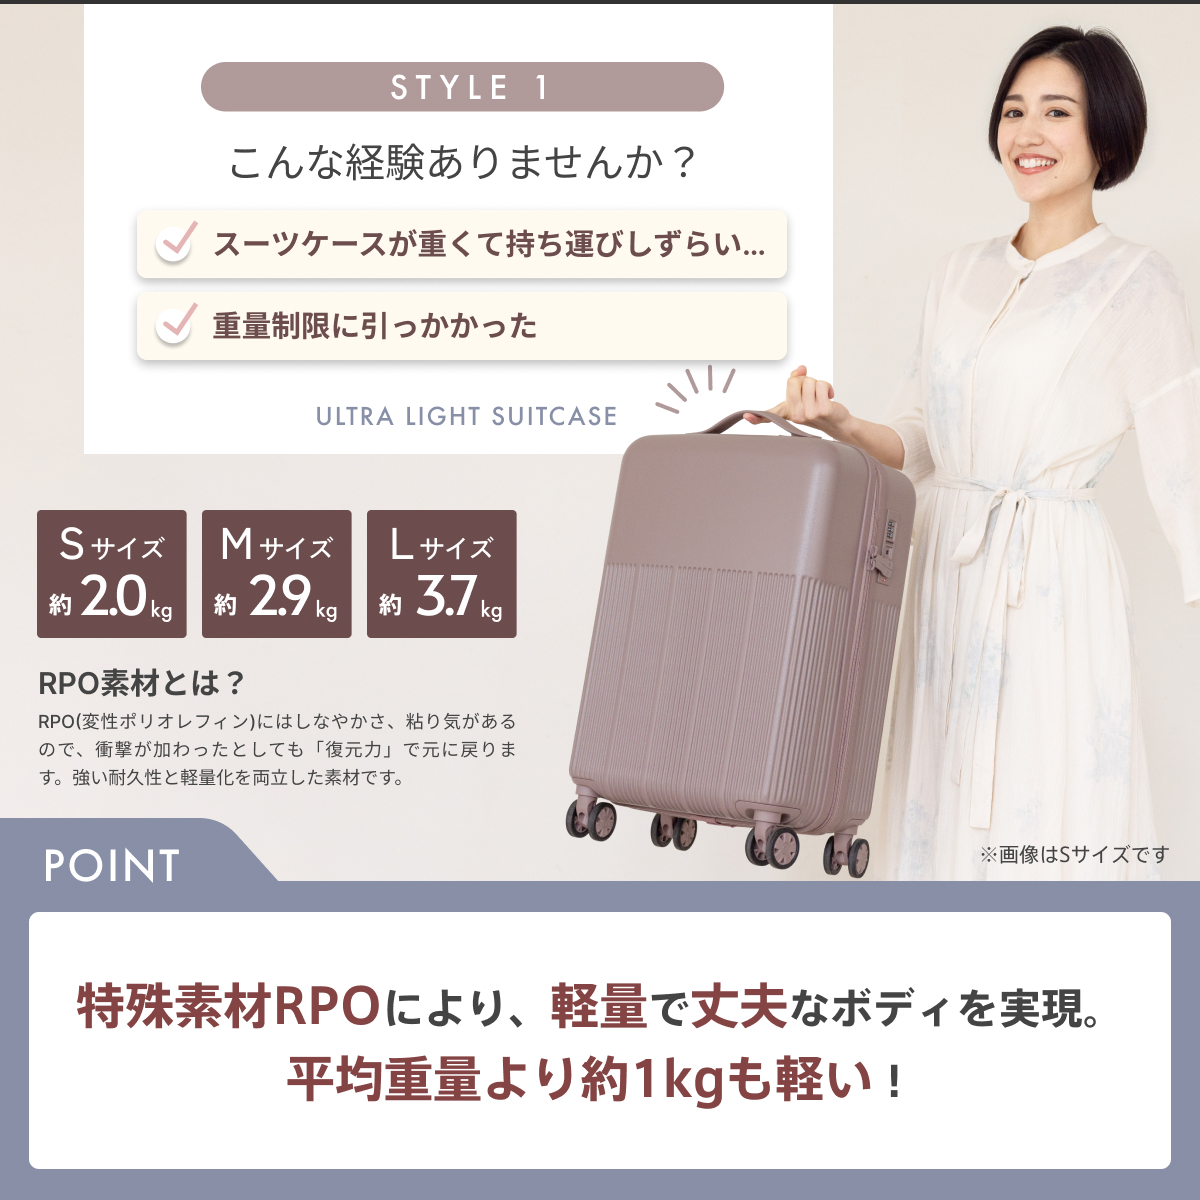 koguMi スーツケース UKU Lサイズ RPO素材 超軽量3.7kg 日本企業 キャリーケース Lサイズ 高機能 高品質 大容量  超静音キャスターファスナー TSA008ロック